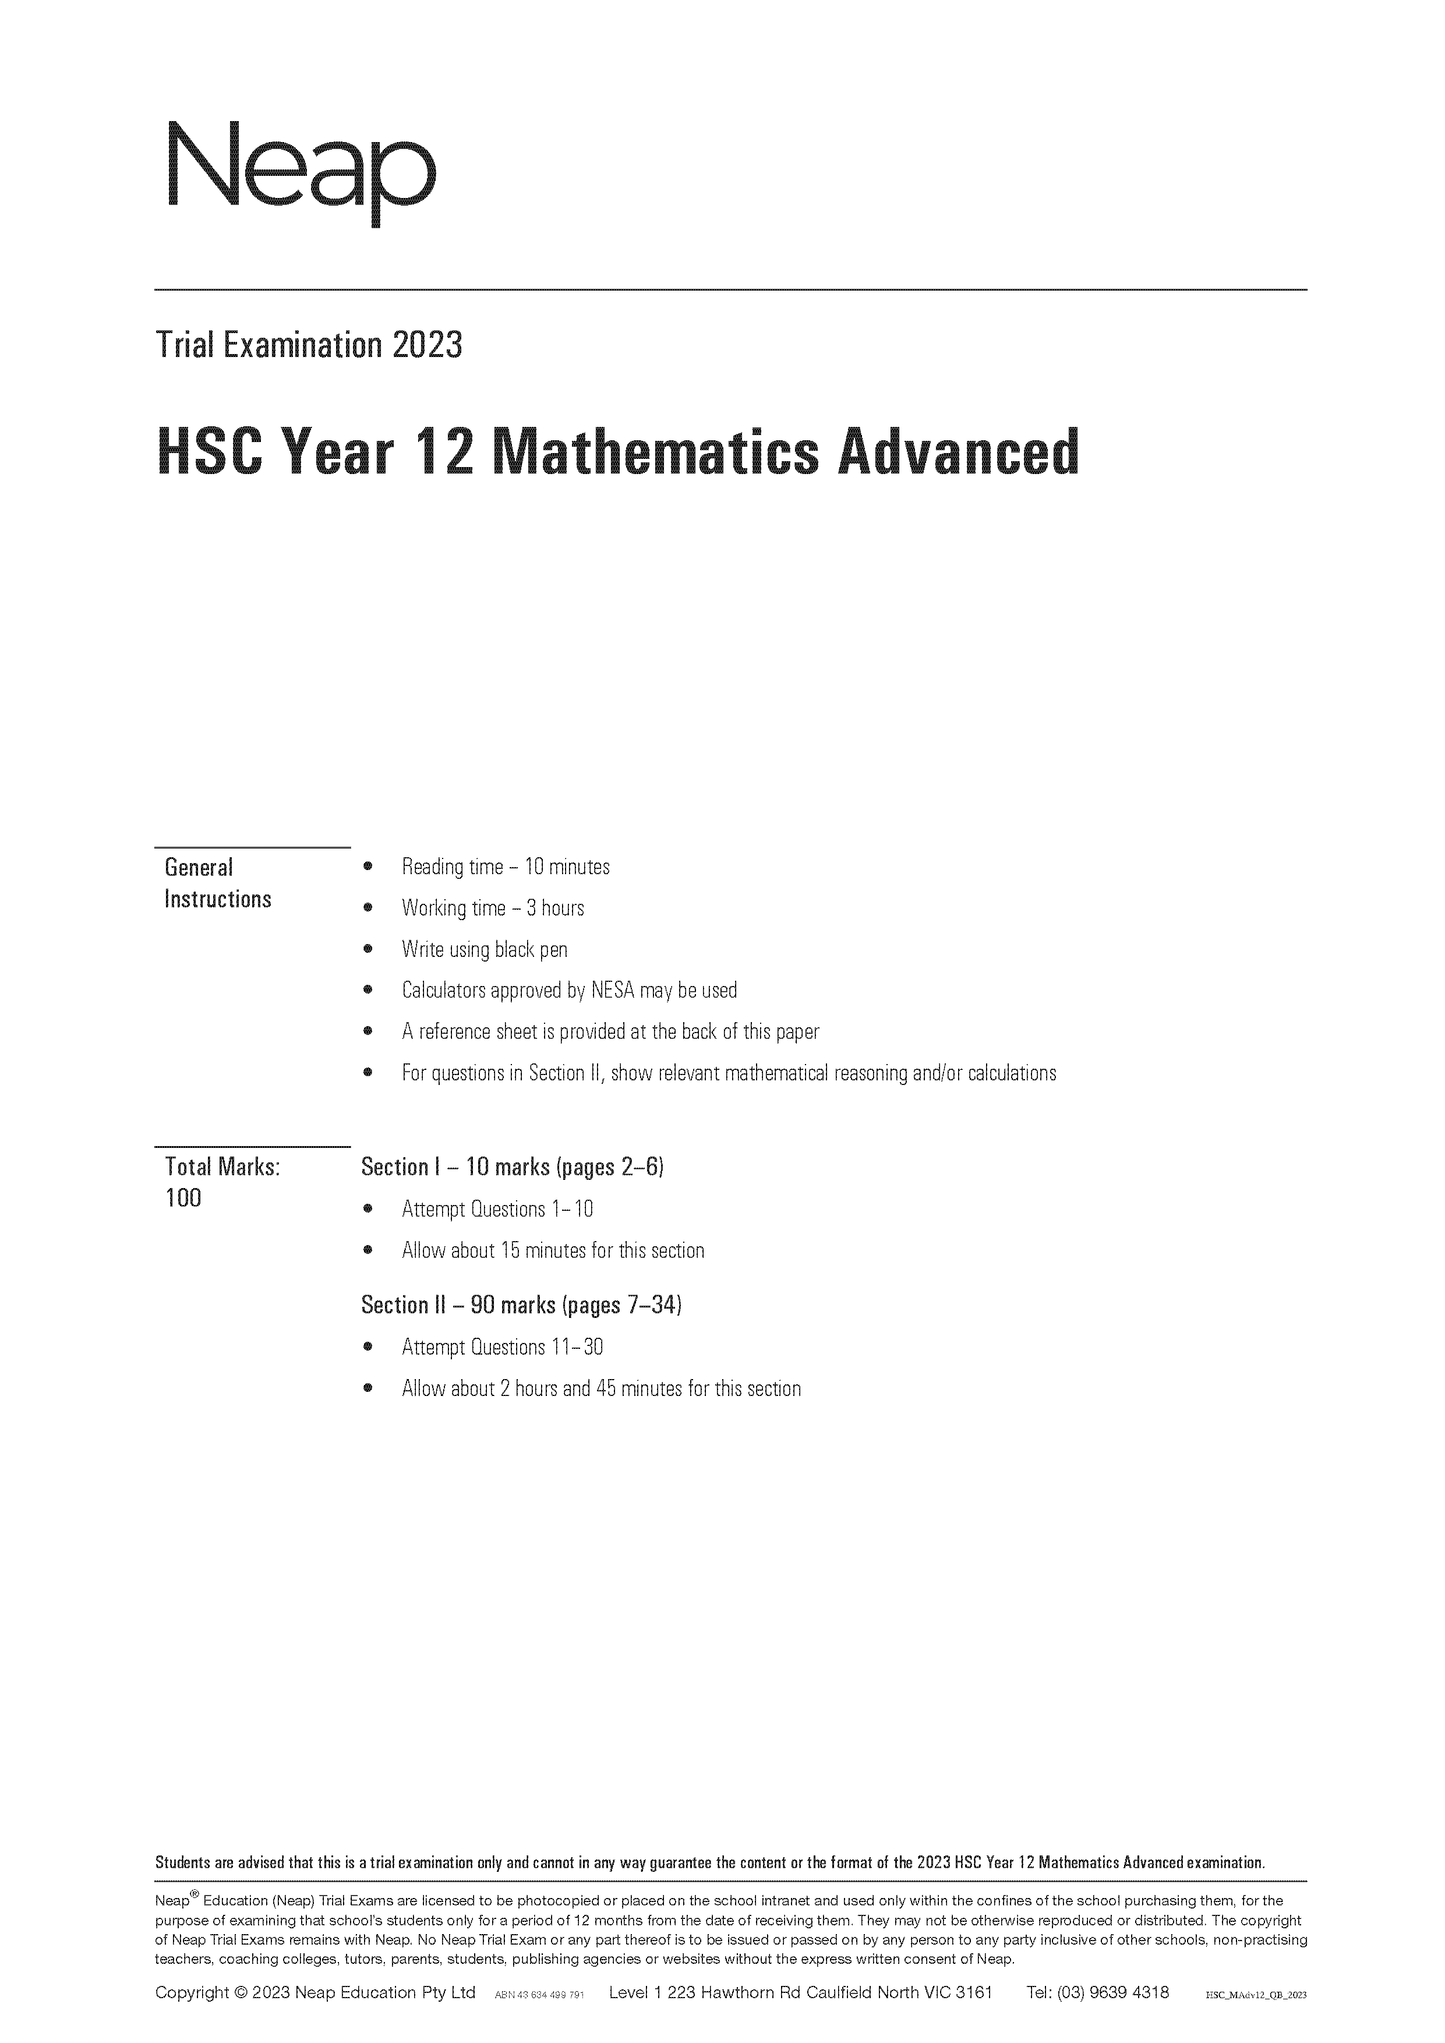 Neap Trial Exam: 2023 HSC Year 12 Maths Advanced